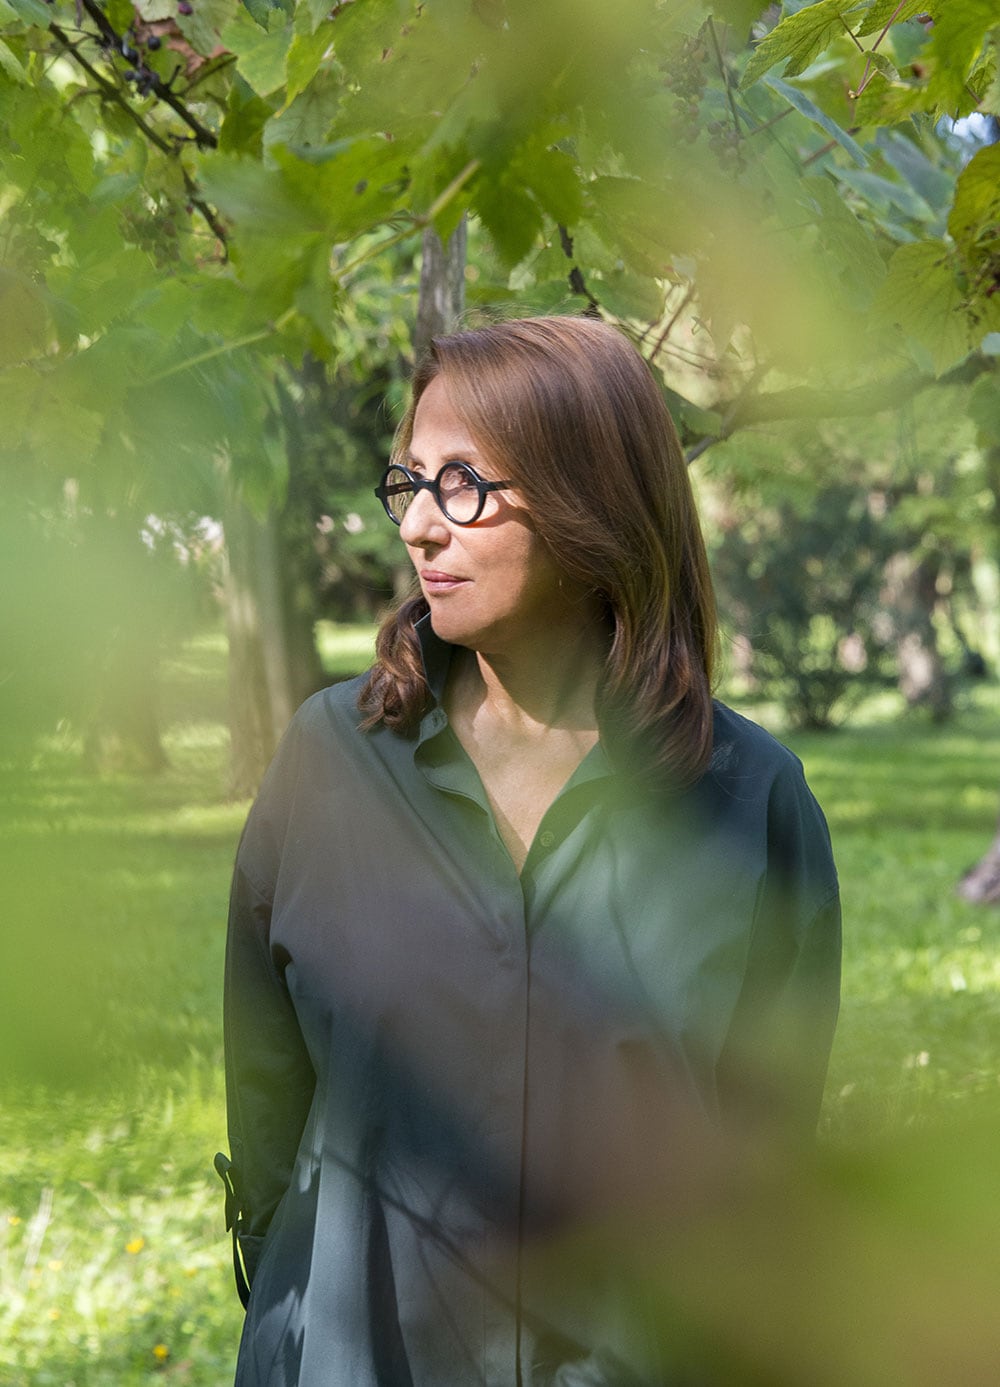 2016年にエルメスの香水クリエーション・ディレクターに就任したクリスティーヌ・ナジェル。科学の素養と優れた独創性をベースに数々の香水を生み出し、高い評価を得てきた彼女が、エルメスの専属調香師として手掛けた待望の「庭園のフレグランス」がシリーズ6作目にあたる《ラグーナの庭》(2019)だ。